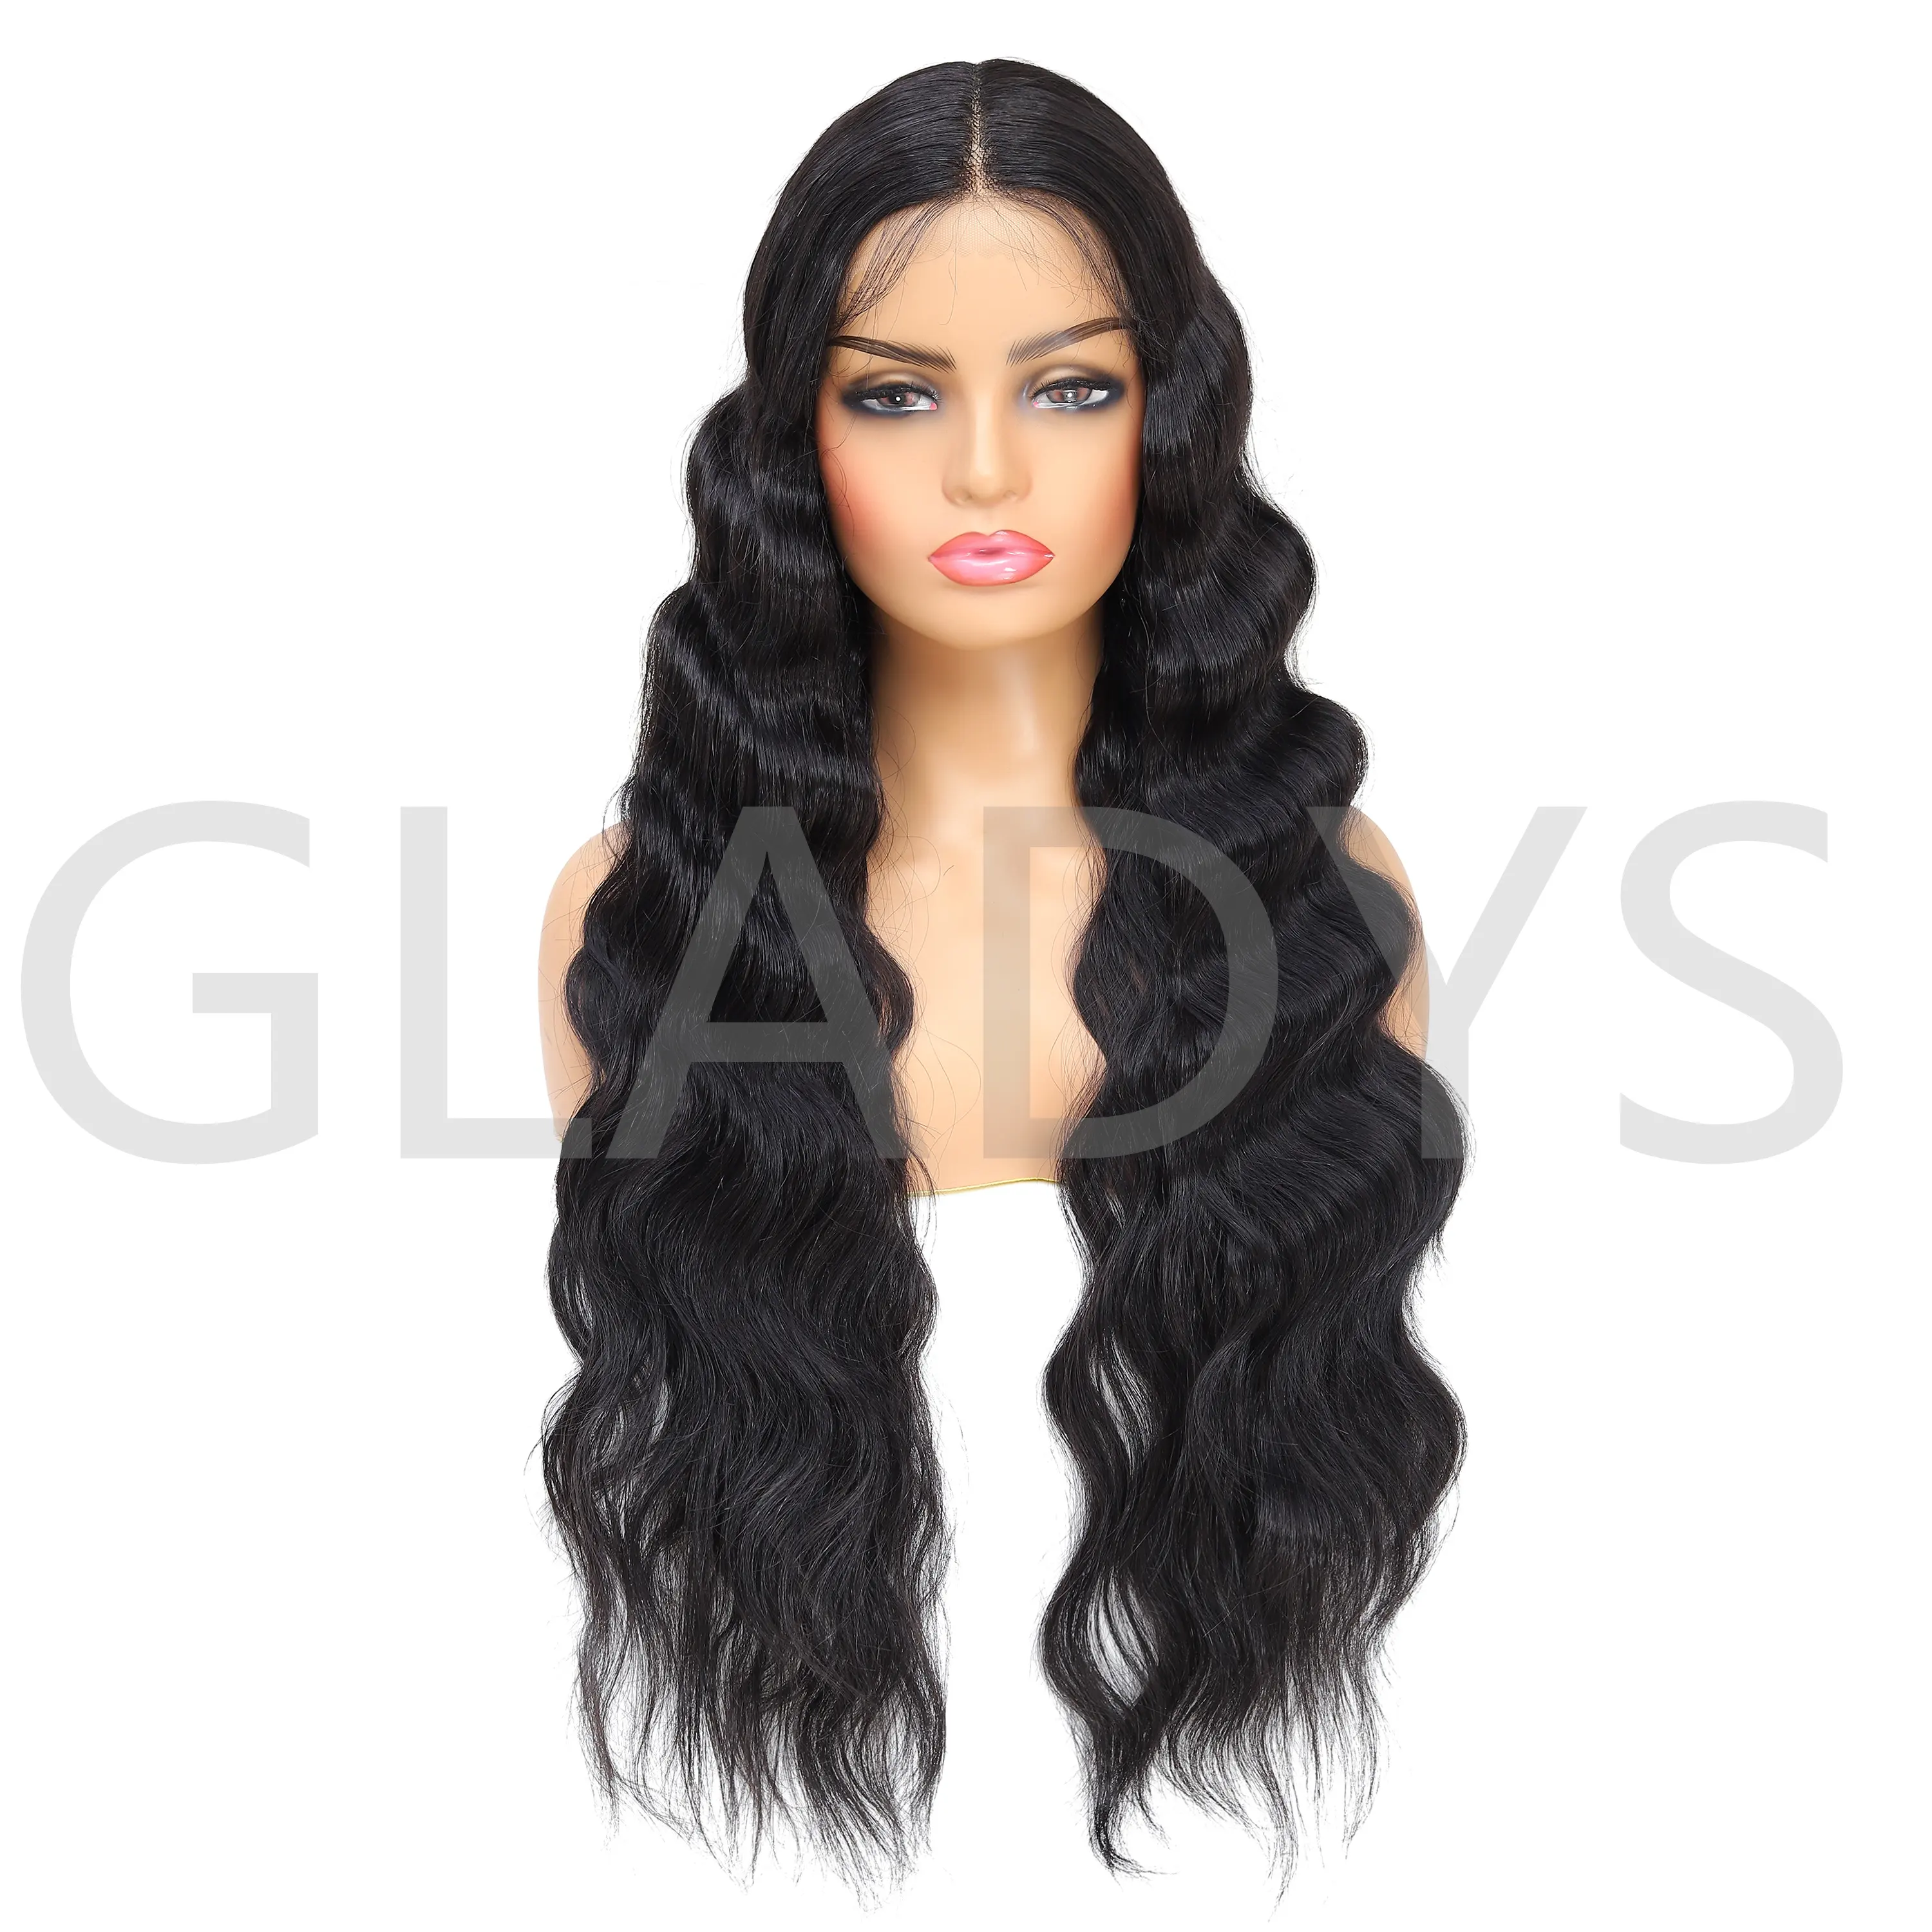 Gladys peruca de cabelo natural sintético, para mulheres negras, parte t, frontal, ombré, loira